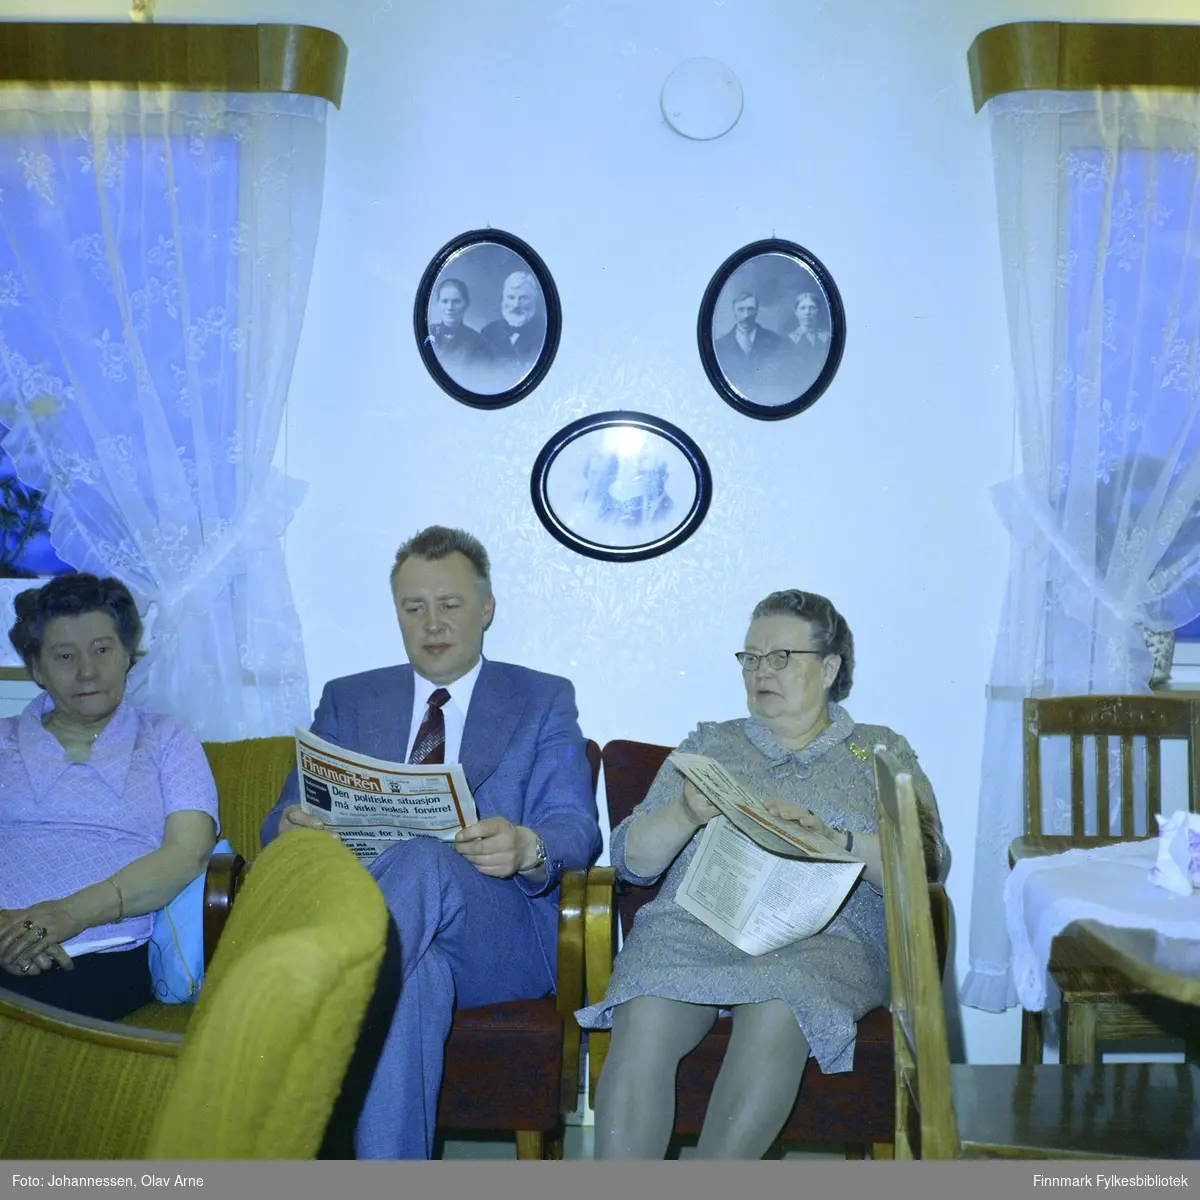 Fra venstre: Fru Sivertsen og Leif Olsborg (i midten) og Berit Sivertsen til høyre

Leif leser avisen Finnmarken med overskrift: Den politiske situasjonen må virke nokså forvirret

Foto trolig tatt på 1960-tallet eller tidlig 1960/70-tallet
